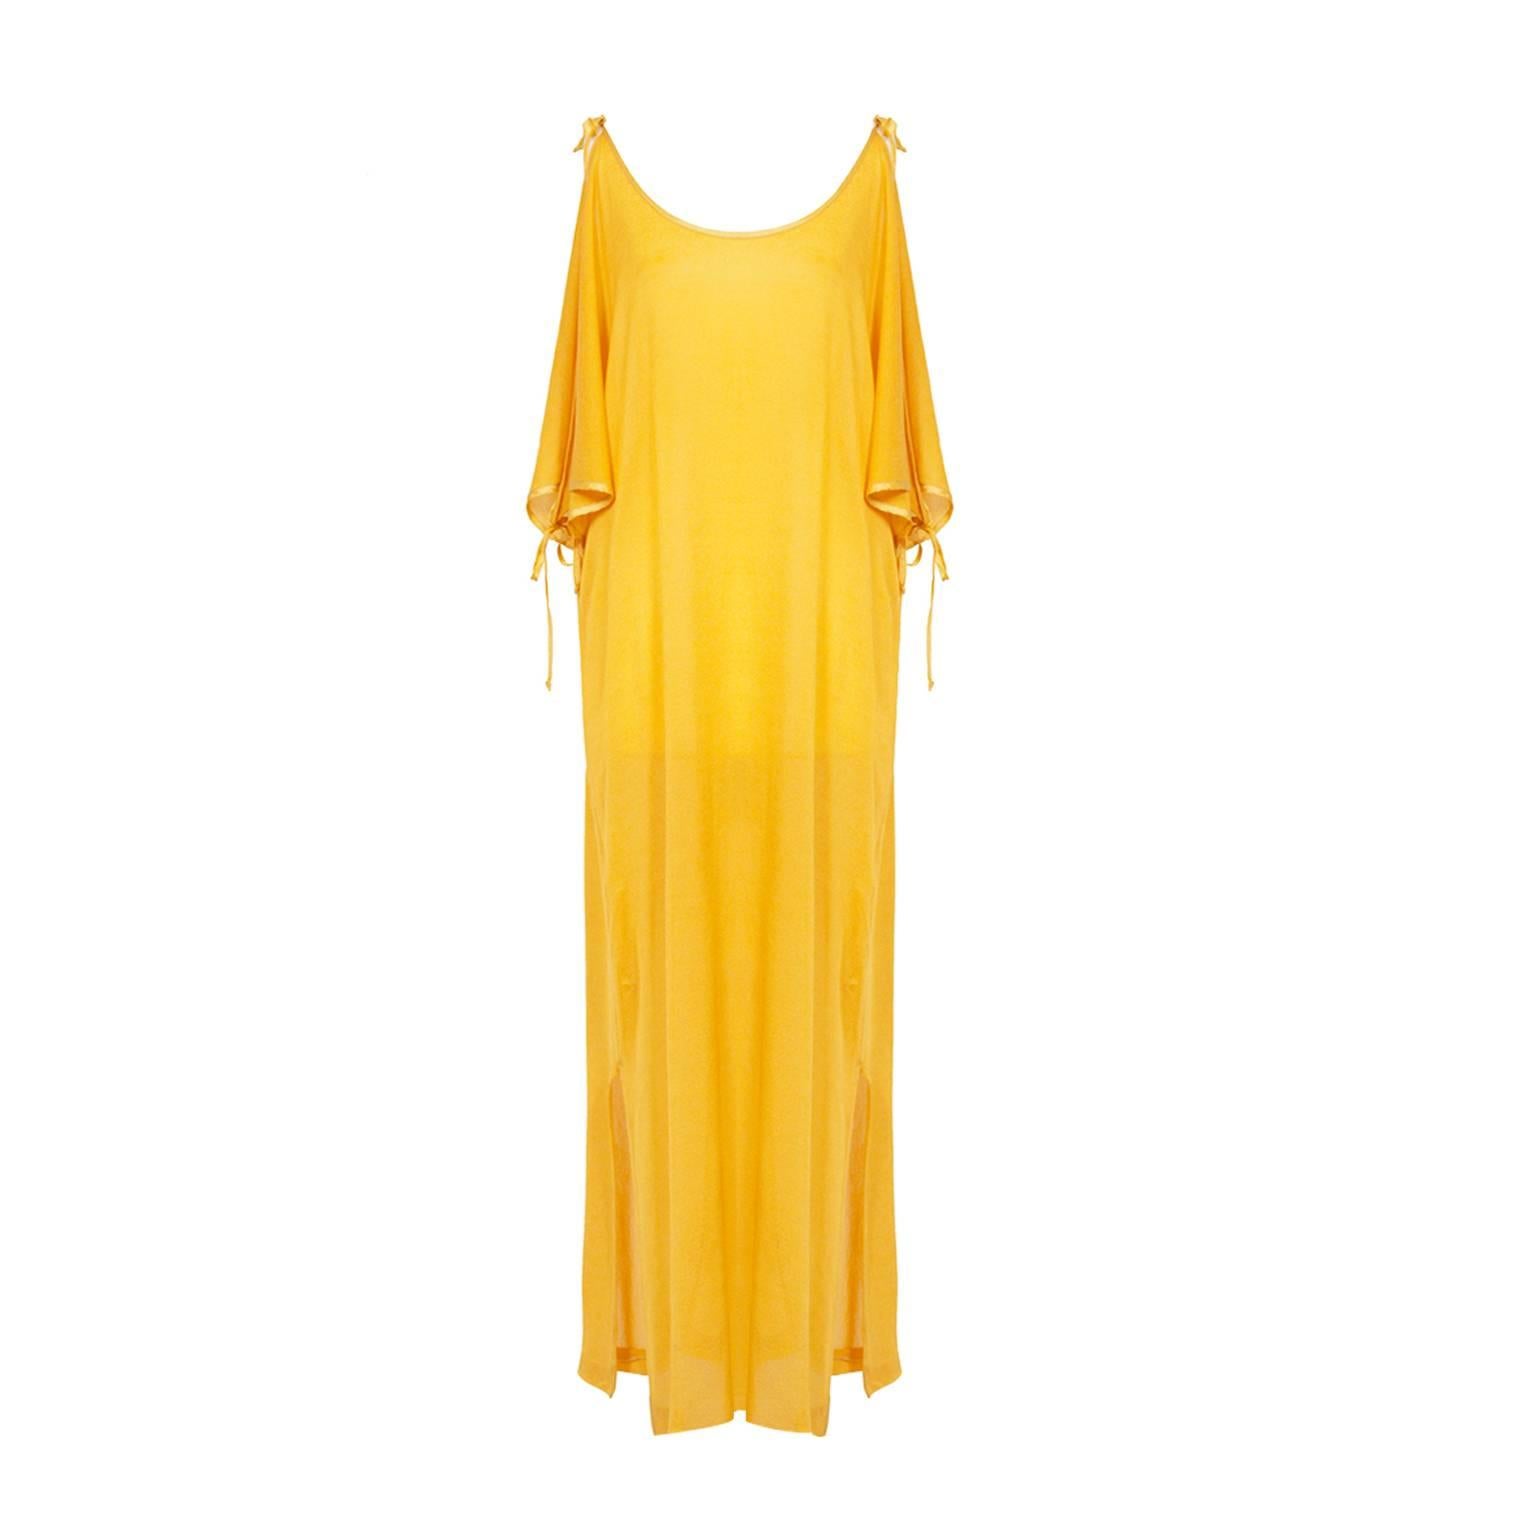 Pierre Cardin Mustard Yellow Dress 1980s 